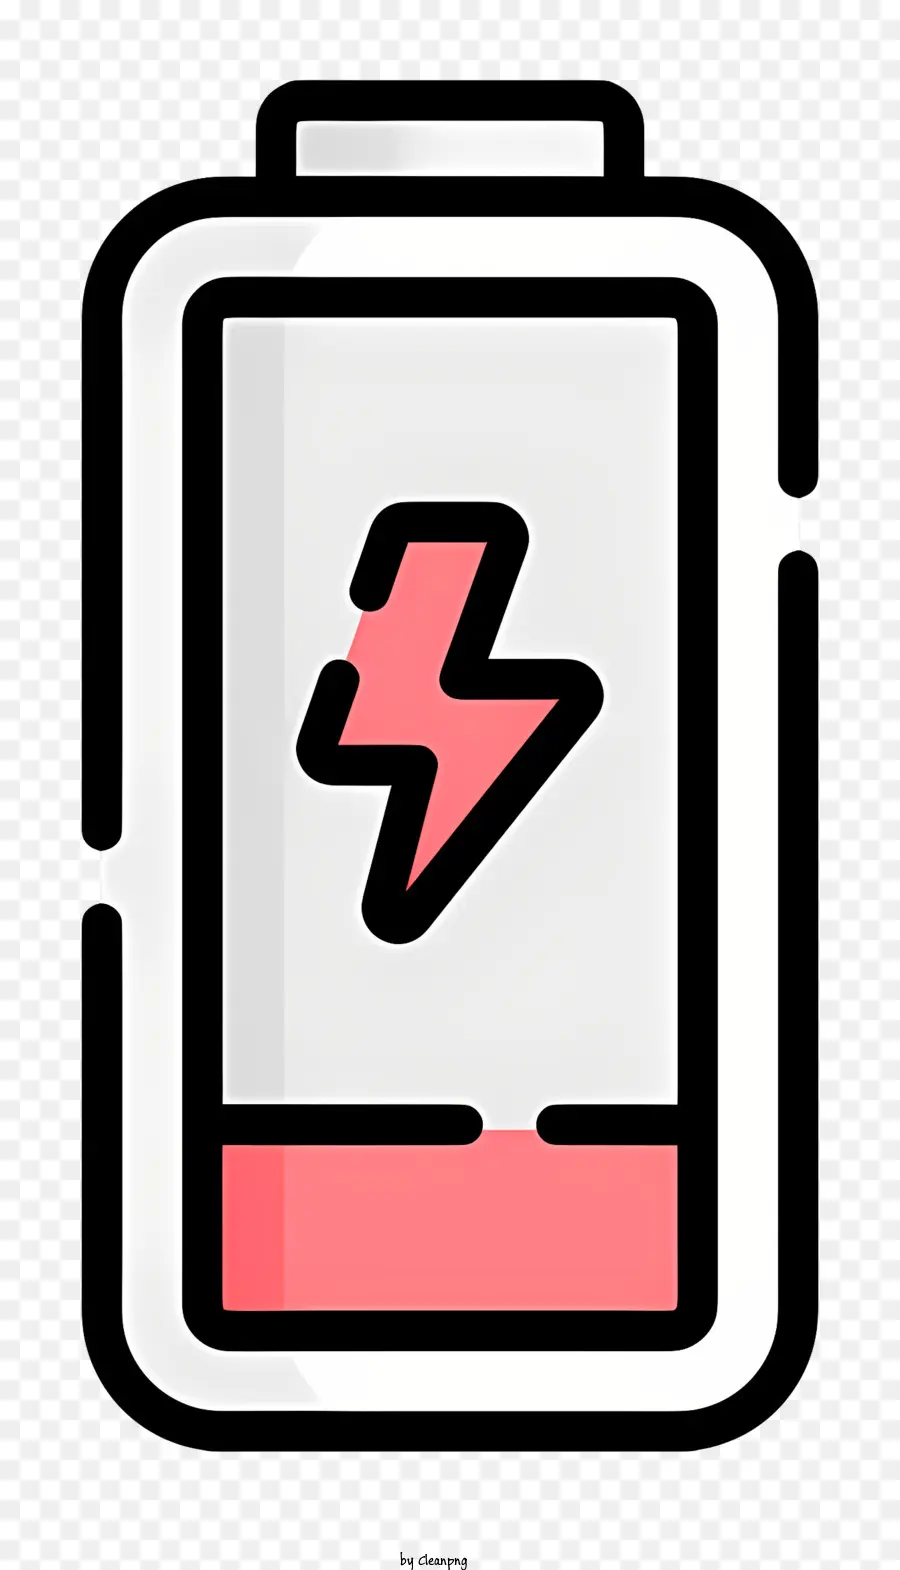 Blitz - Silhouettierte Batterie mit rotem Blitz auftaucht